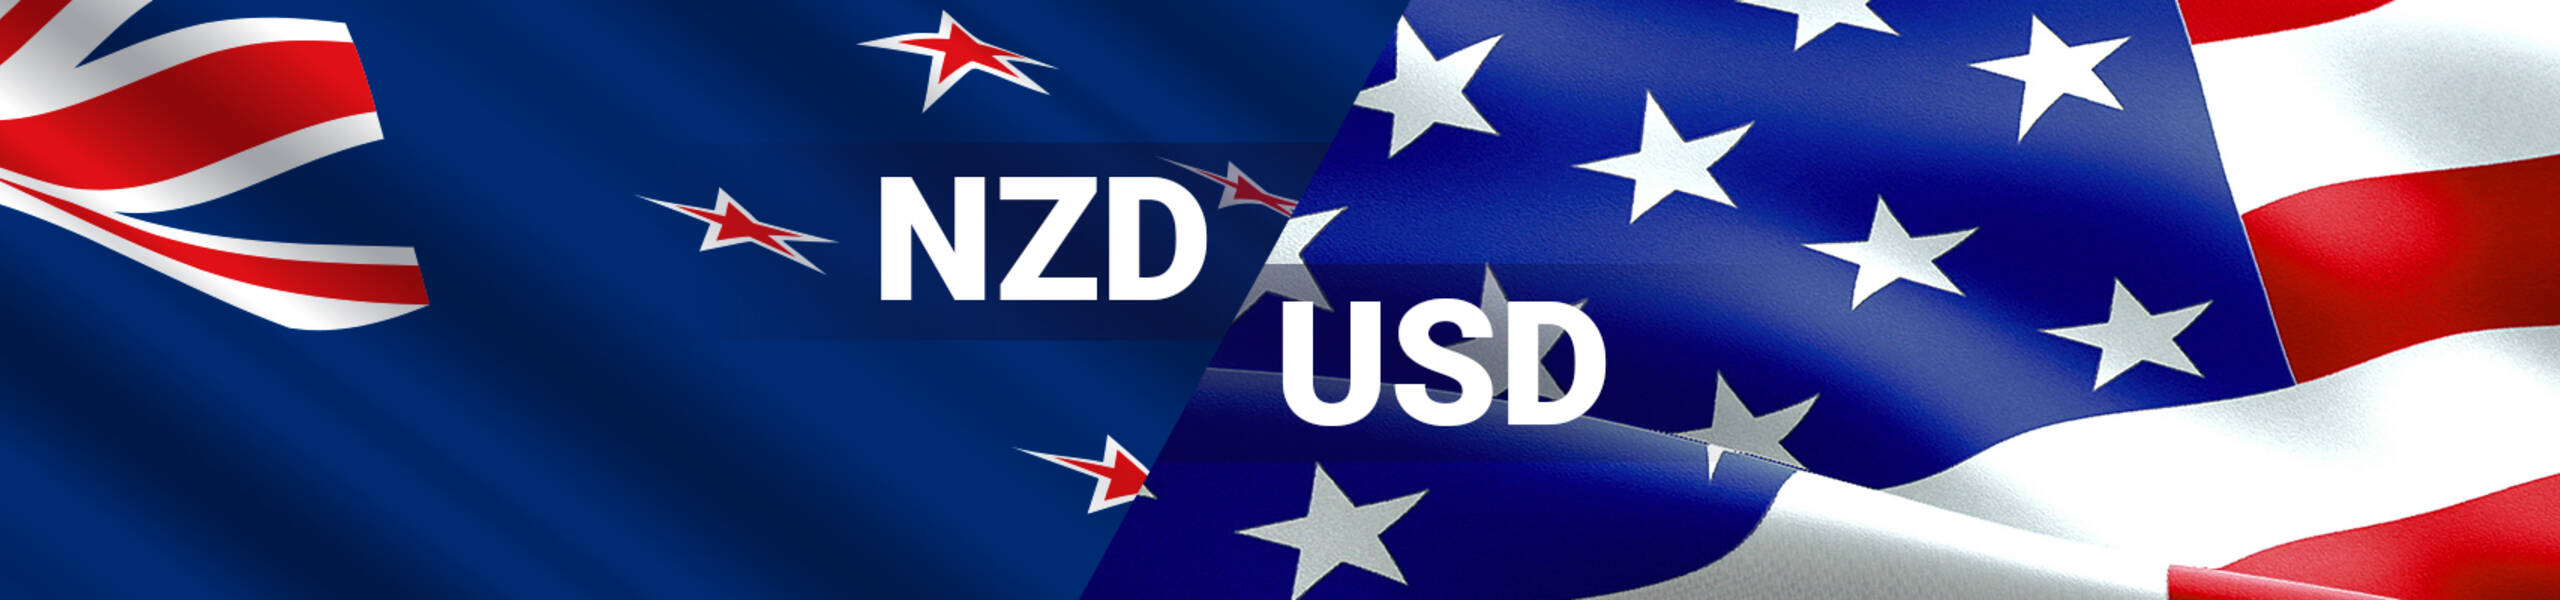 NZD/USD retrocediendo tras el impulso alcista